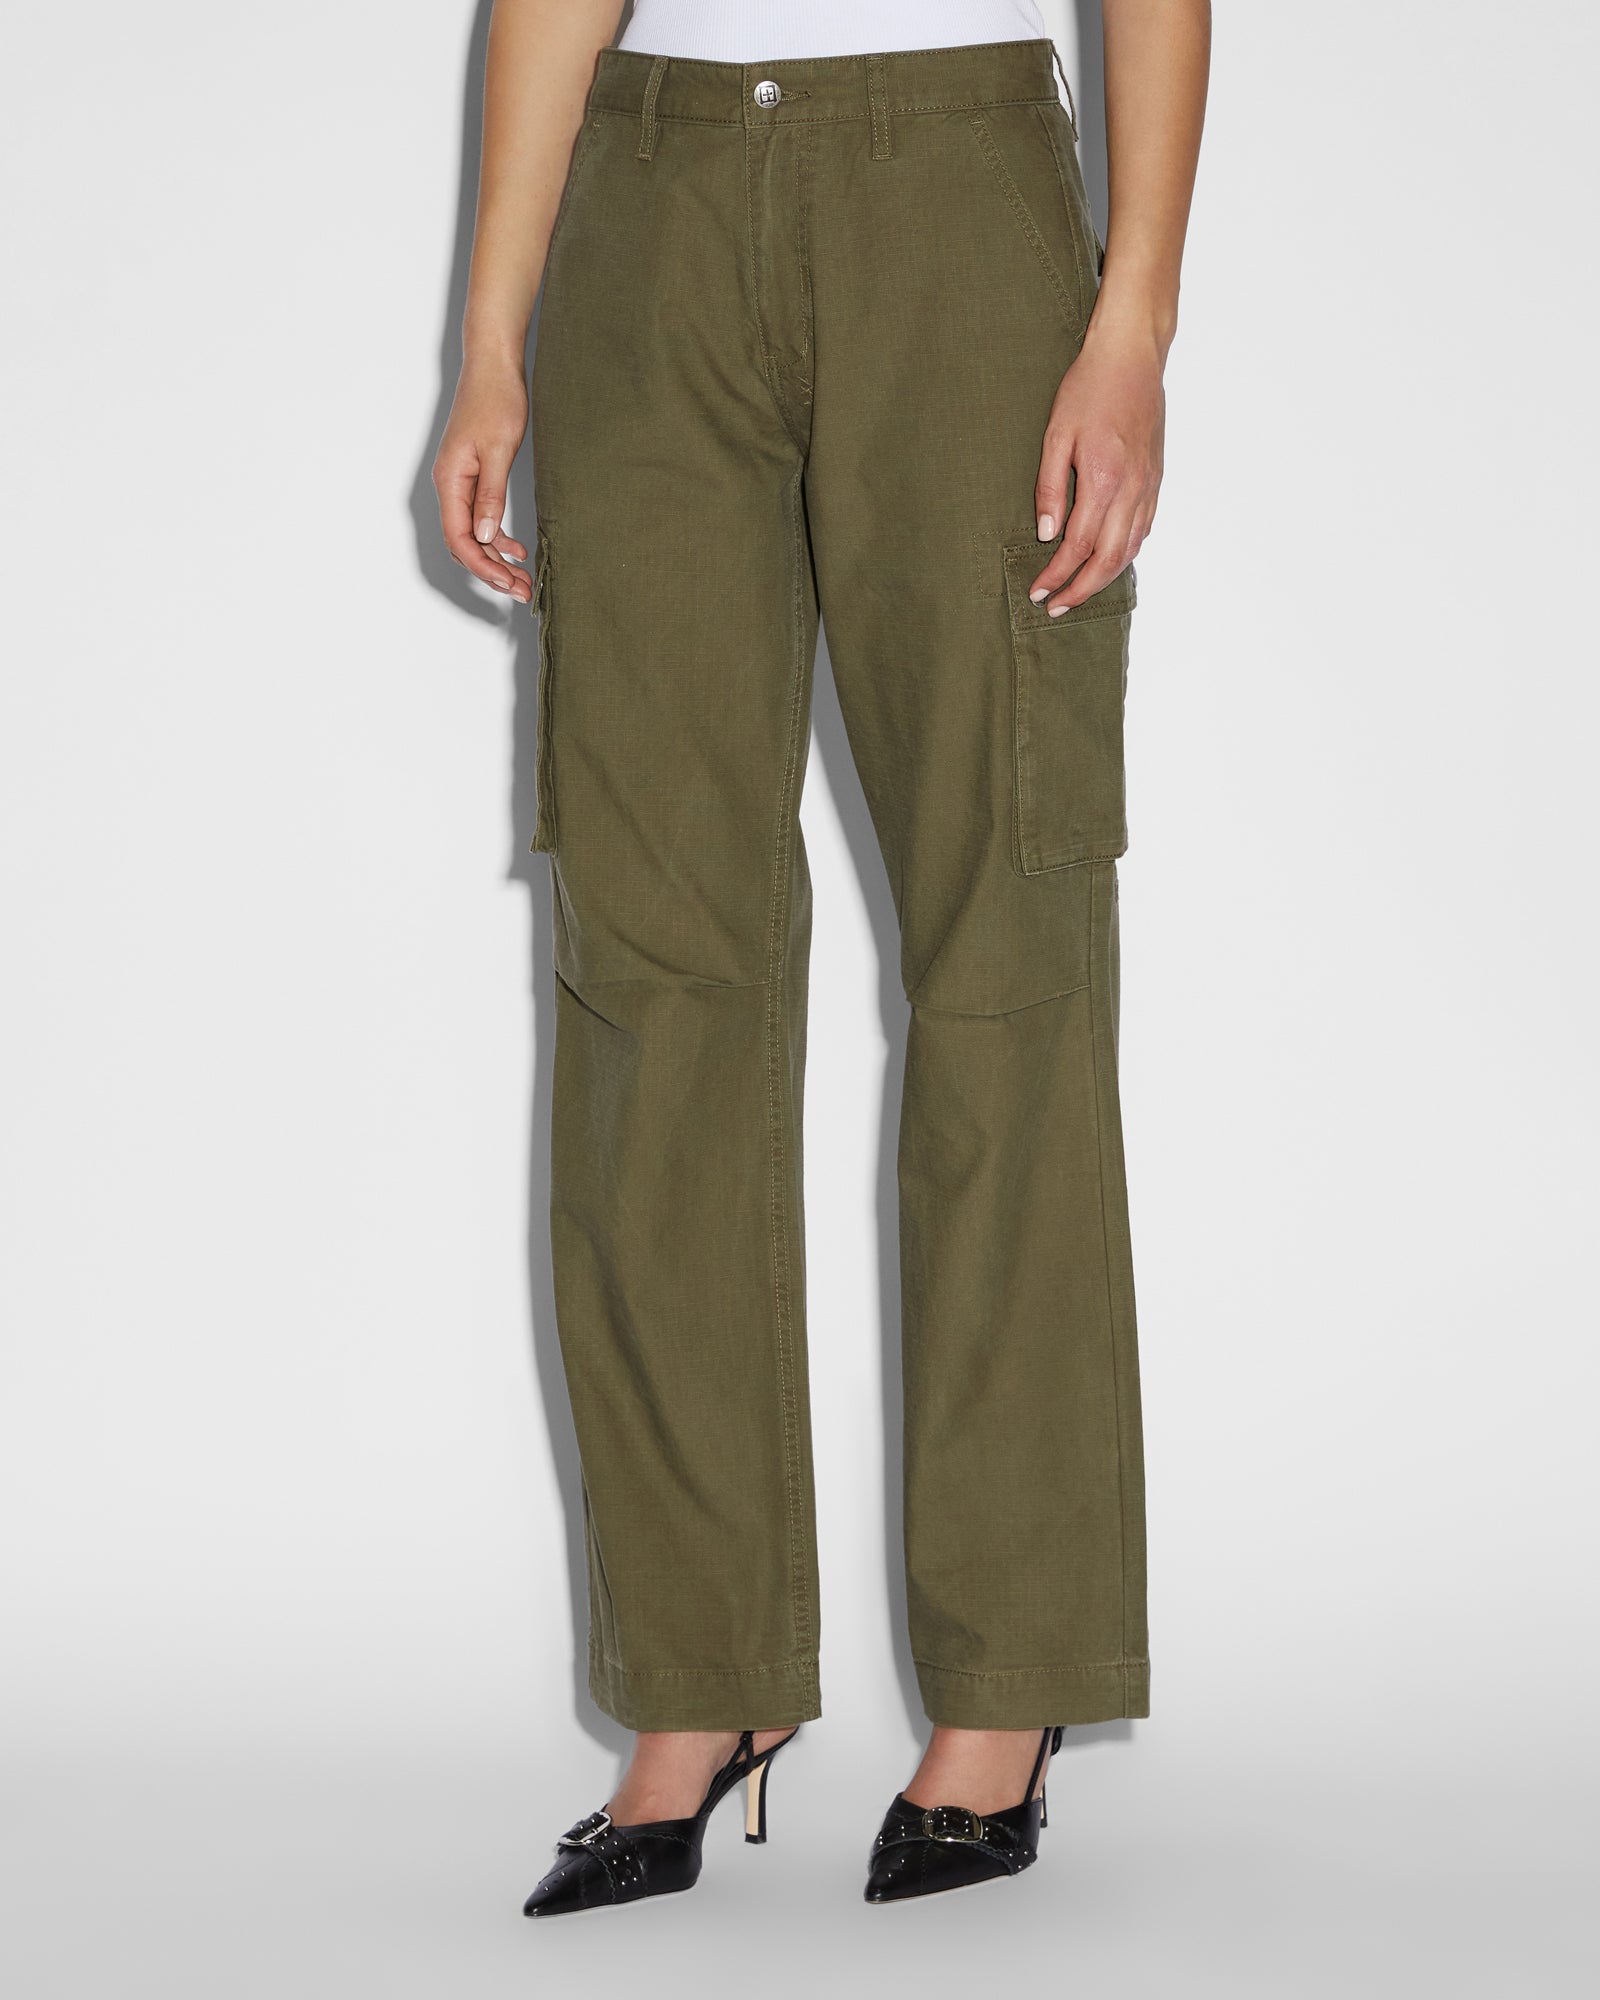 Express High Waisted Satin Cargo Trouser Pant Green Women's Long